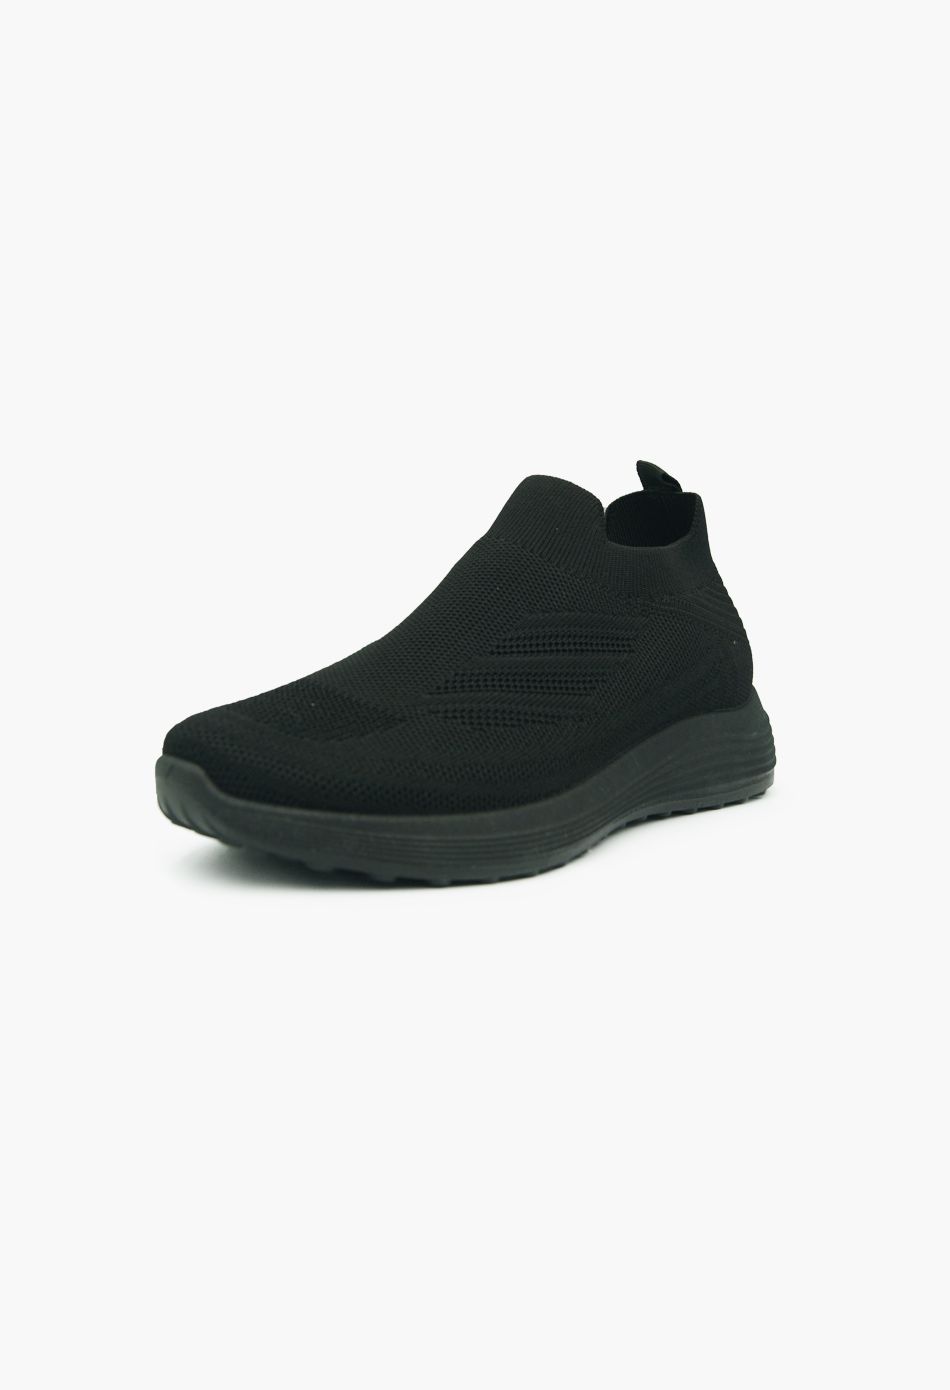 Γυναικεία sneakers τύπου κάλτσα Μαύρα / ZY505-black Γυναικεία Αθλητικά και Sneakers joya.gr